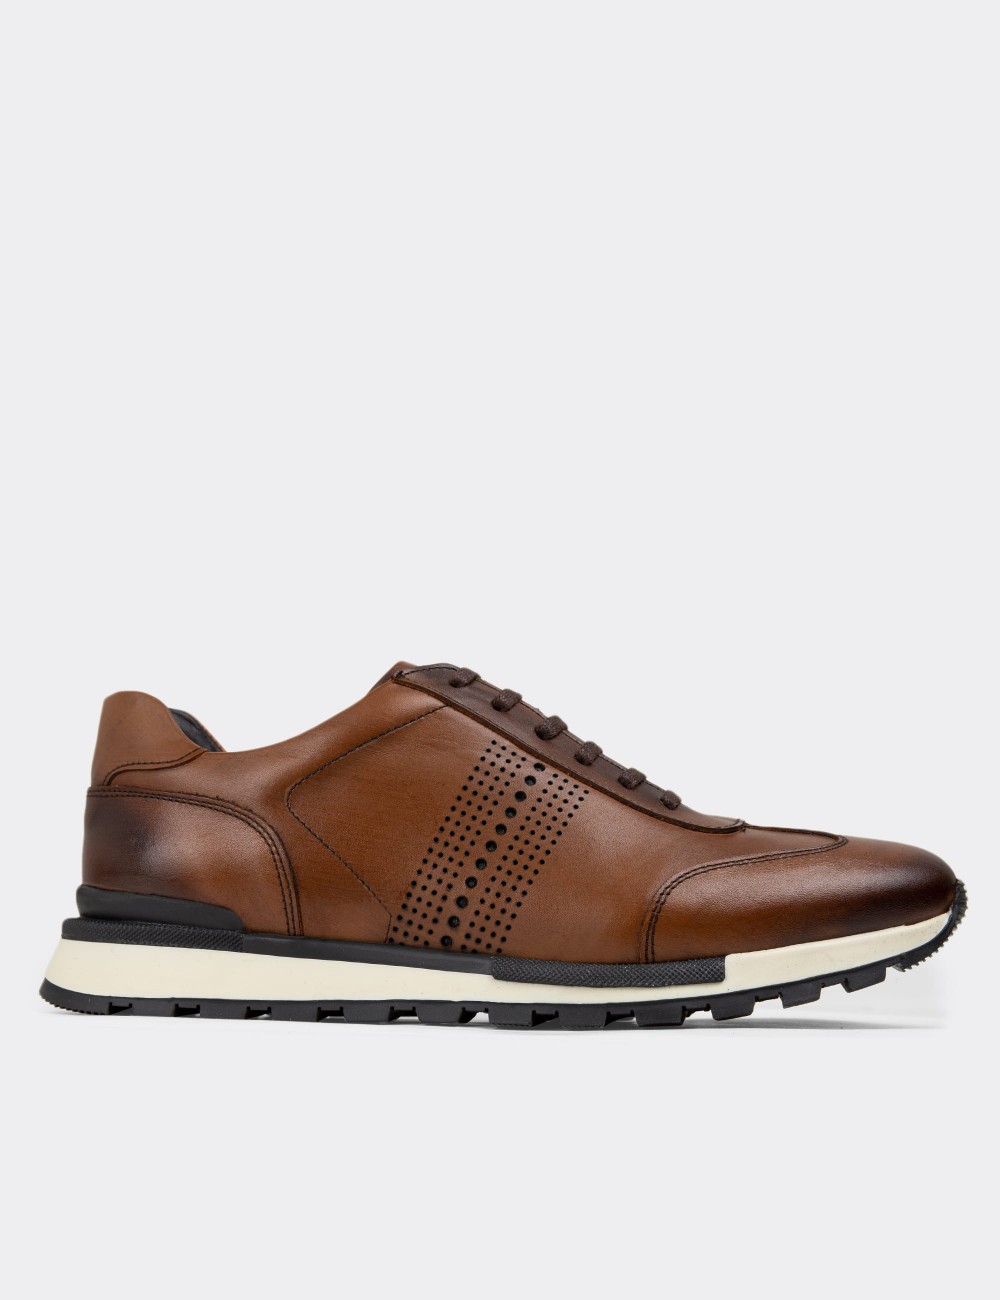 Tan Leather Sneakers - 01738MTBAT02